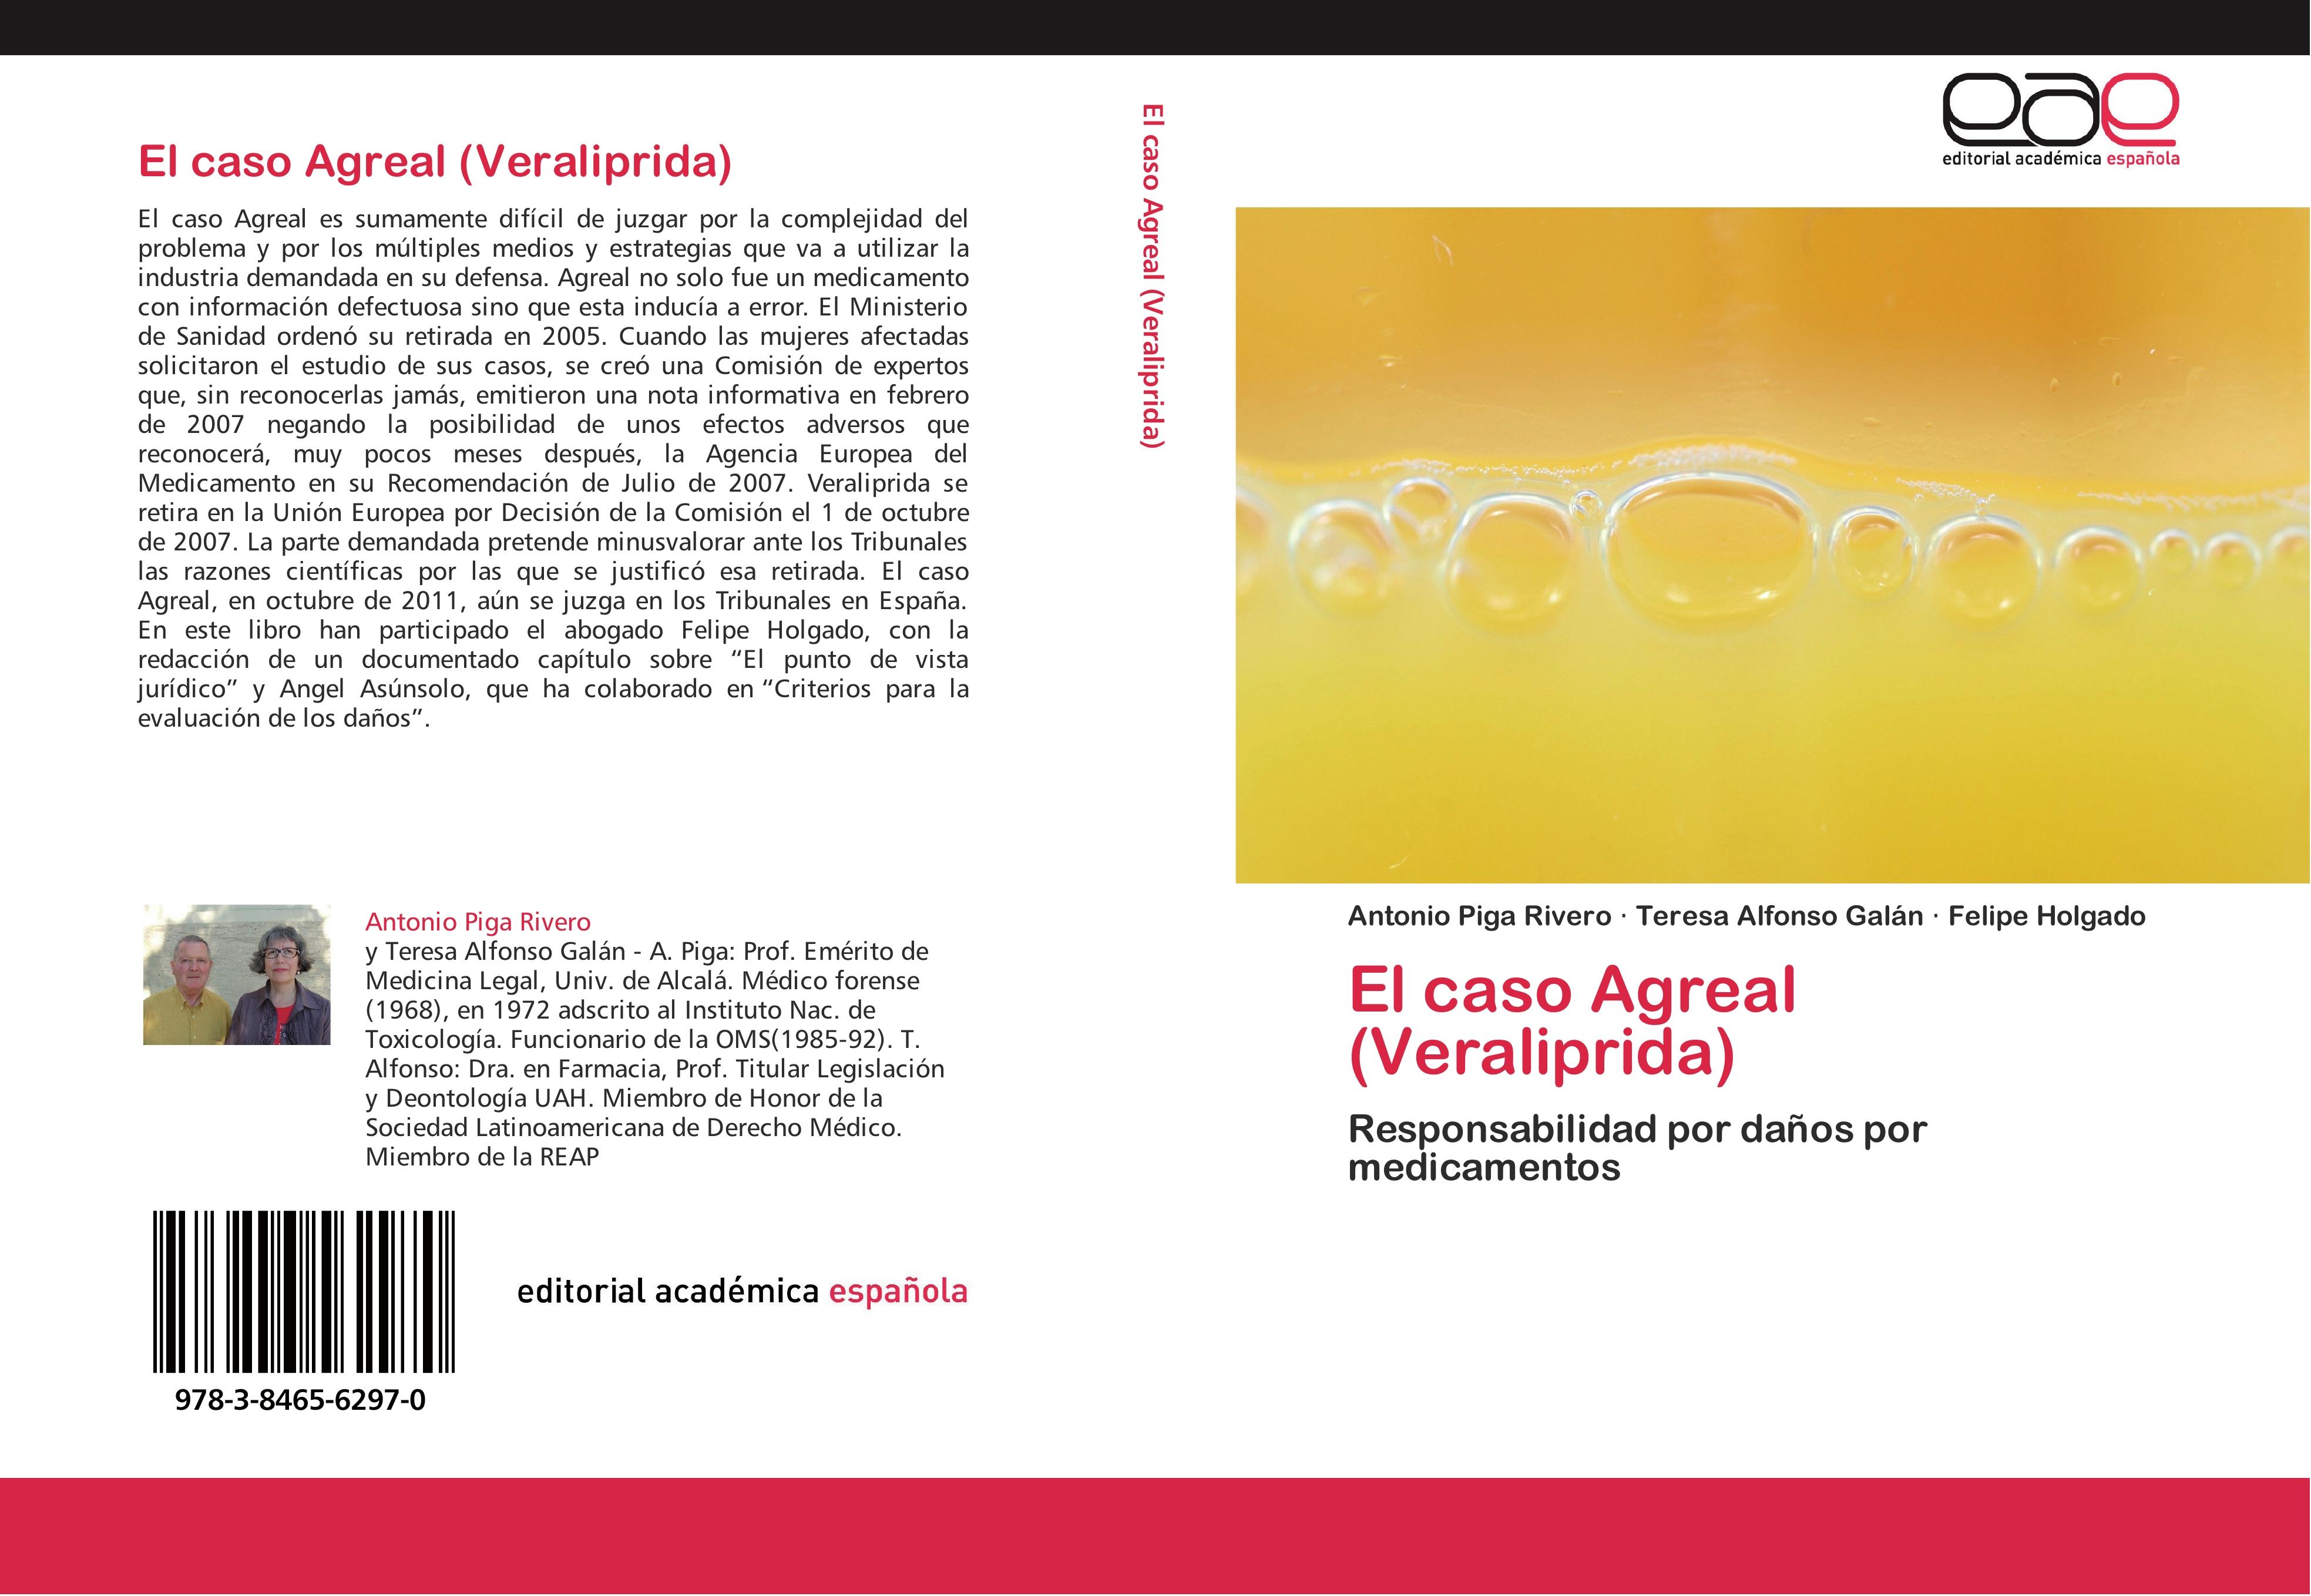 El caso Agreal (Veraliprida) - Antonio Piga Rivero Teresa Alfonso Galán Felipe Holgado